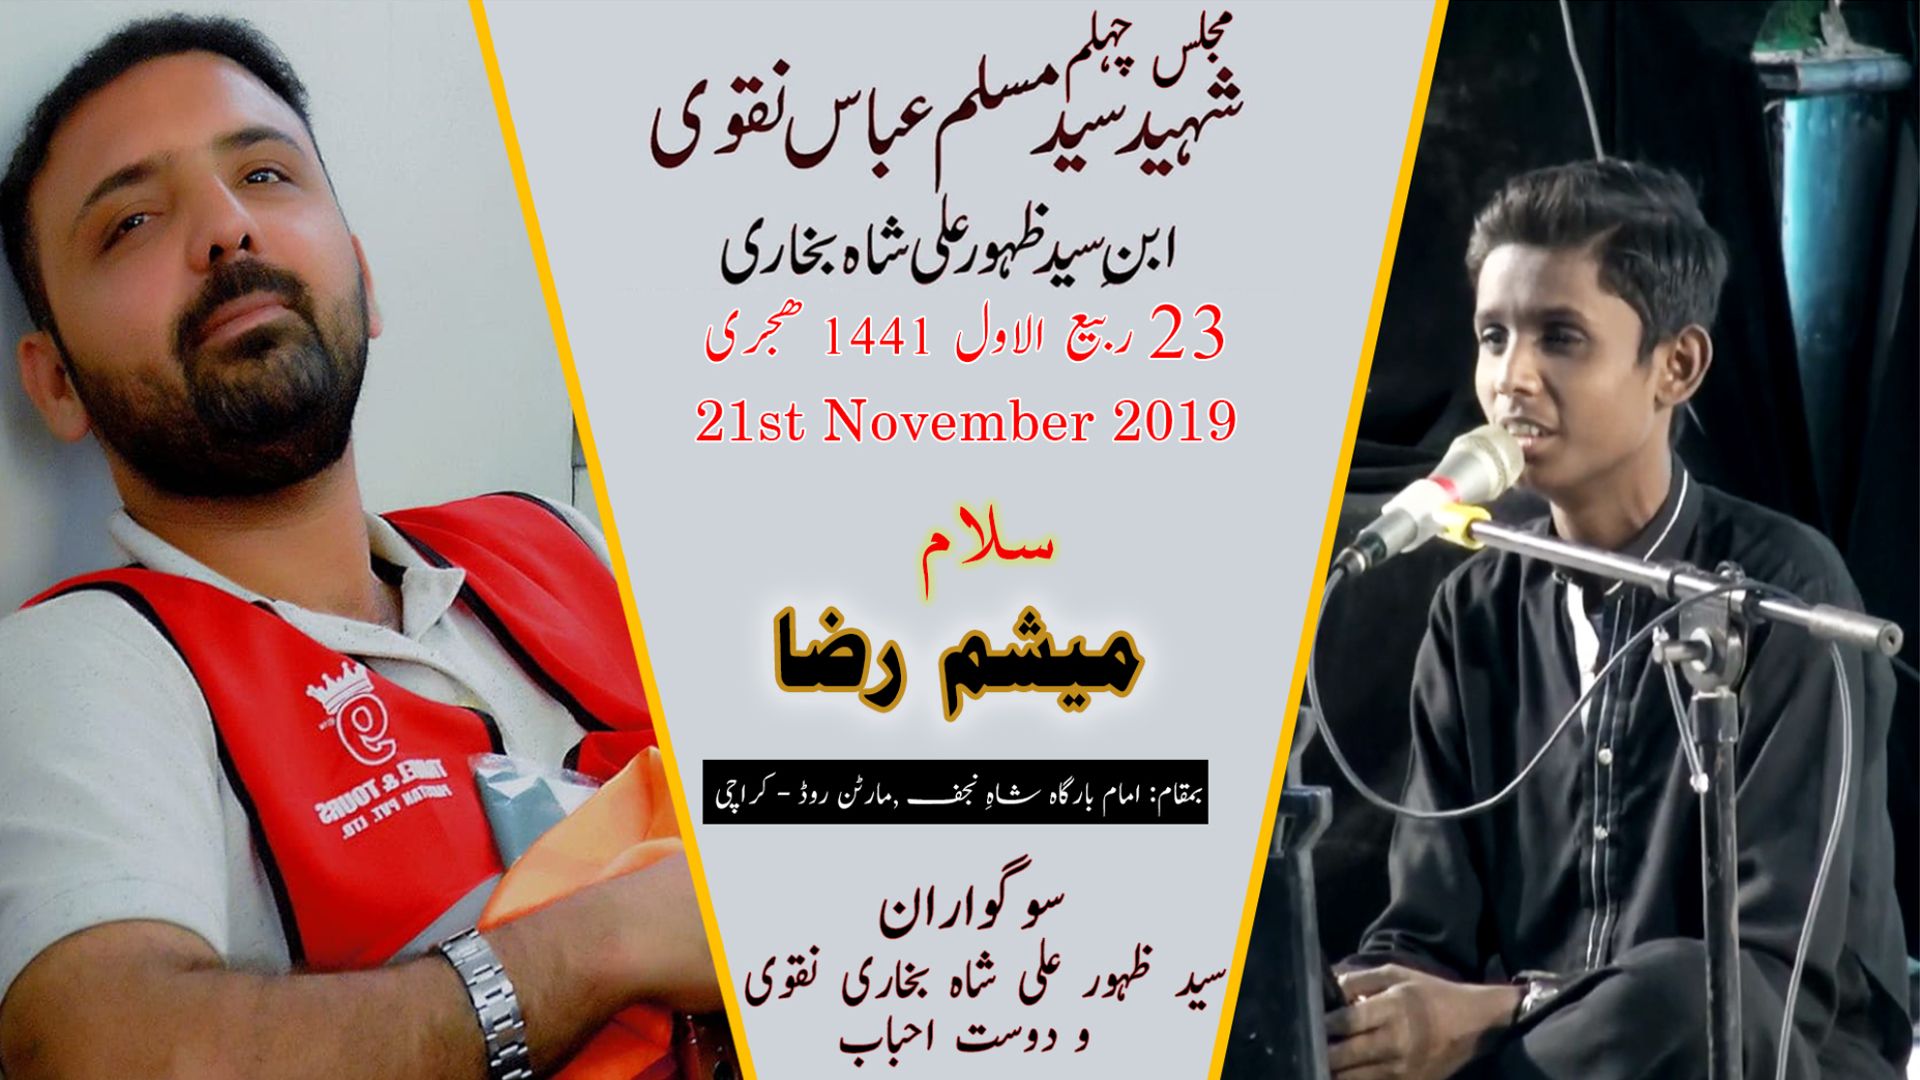 Salaam | Mesum Shah | 21st November 2019 - Imam Bargah Shah-e-Najaf - Martan Road - Karachi